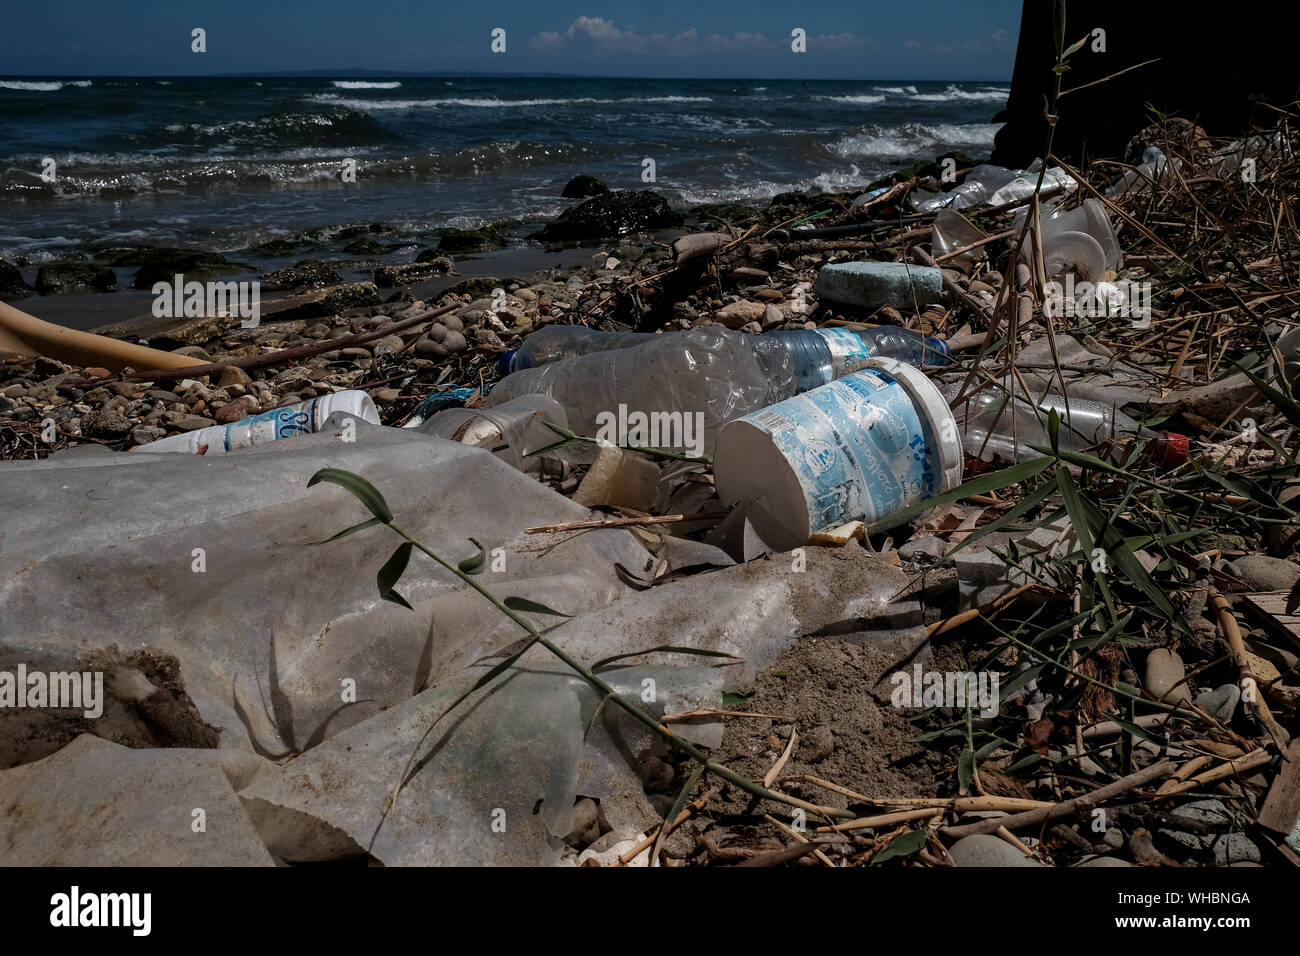 Les déchets en plastique le long du rivage de l'île de Zakynthos montrant l'impact environnemental est en plastique ayant à polluer les océans du monde. Banque D'Images